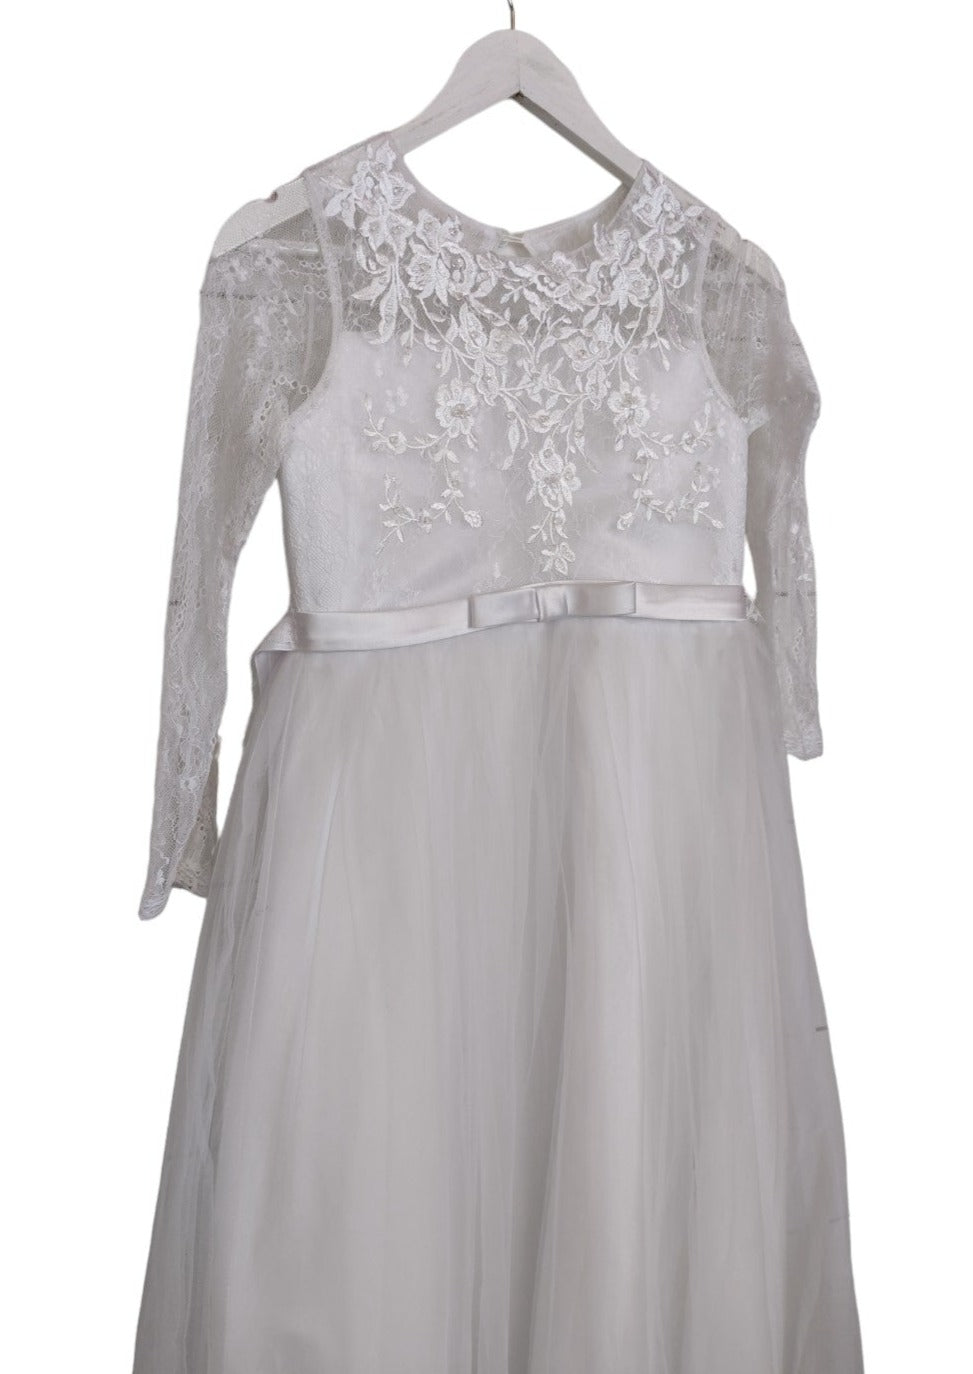 Φόρεμα Παρανύμφων με Τούλι σε Λευκό Χρώμα (5-6 ετών)